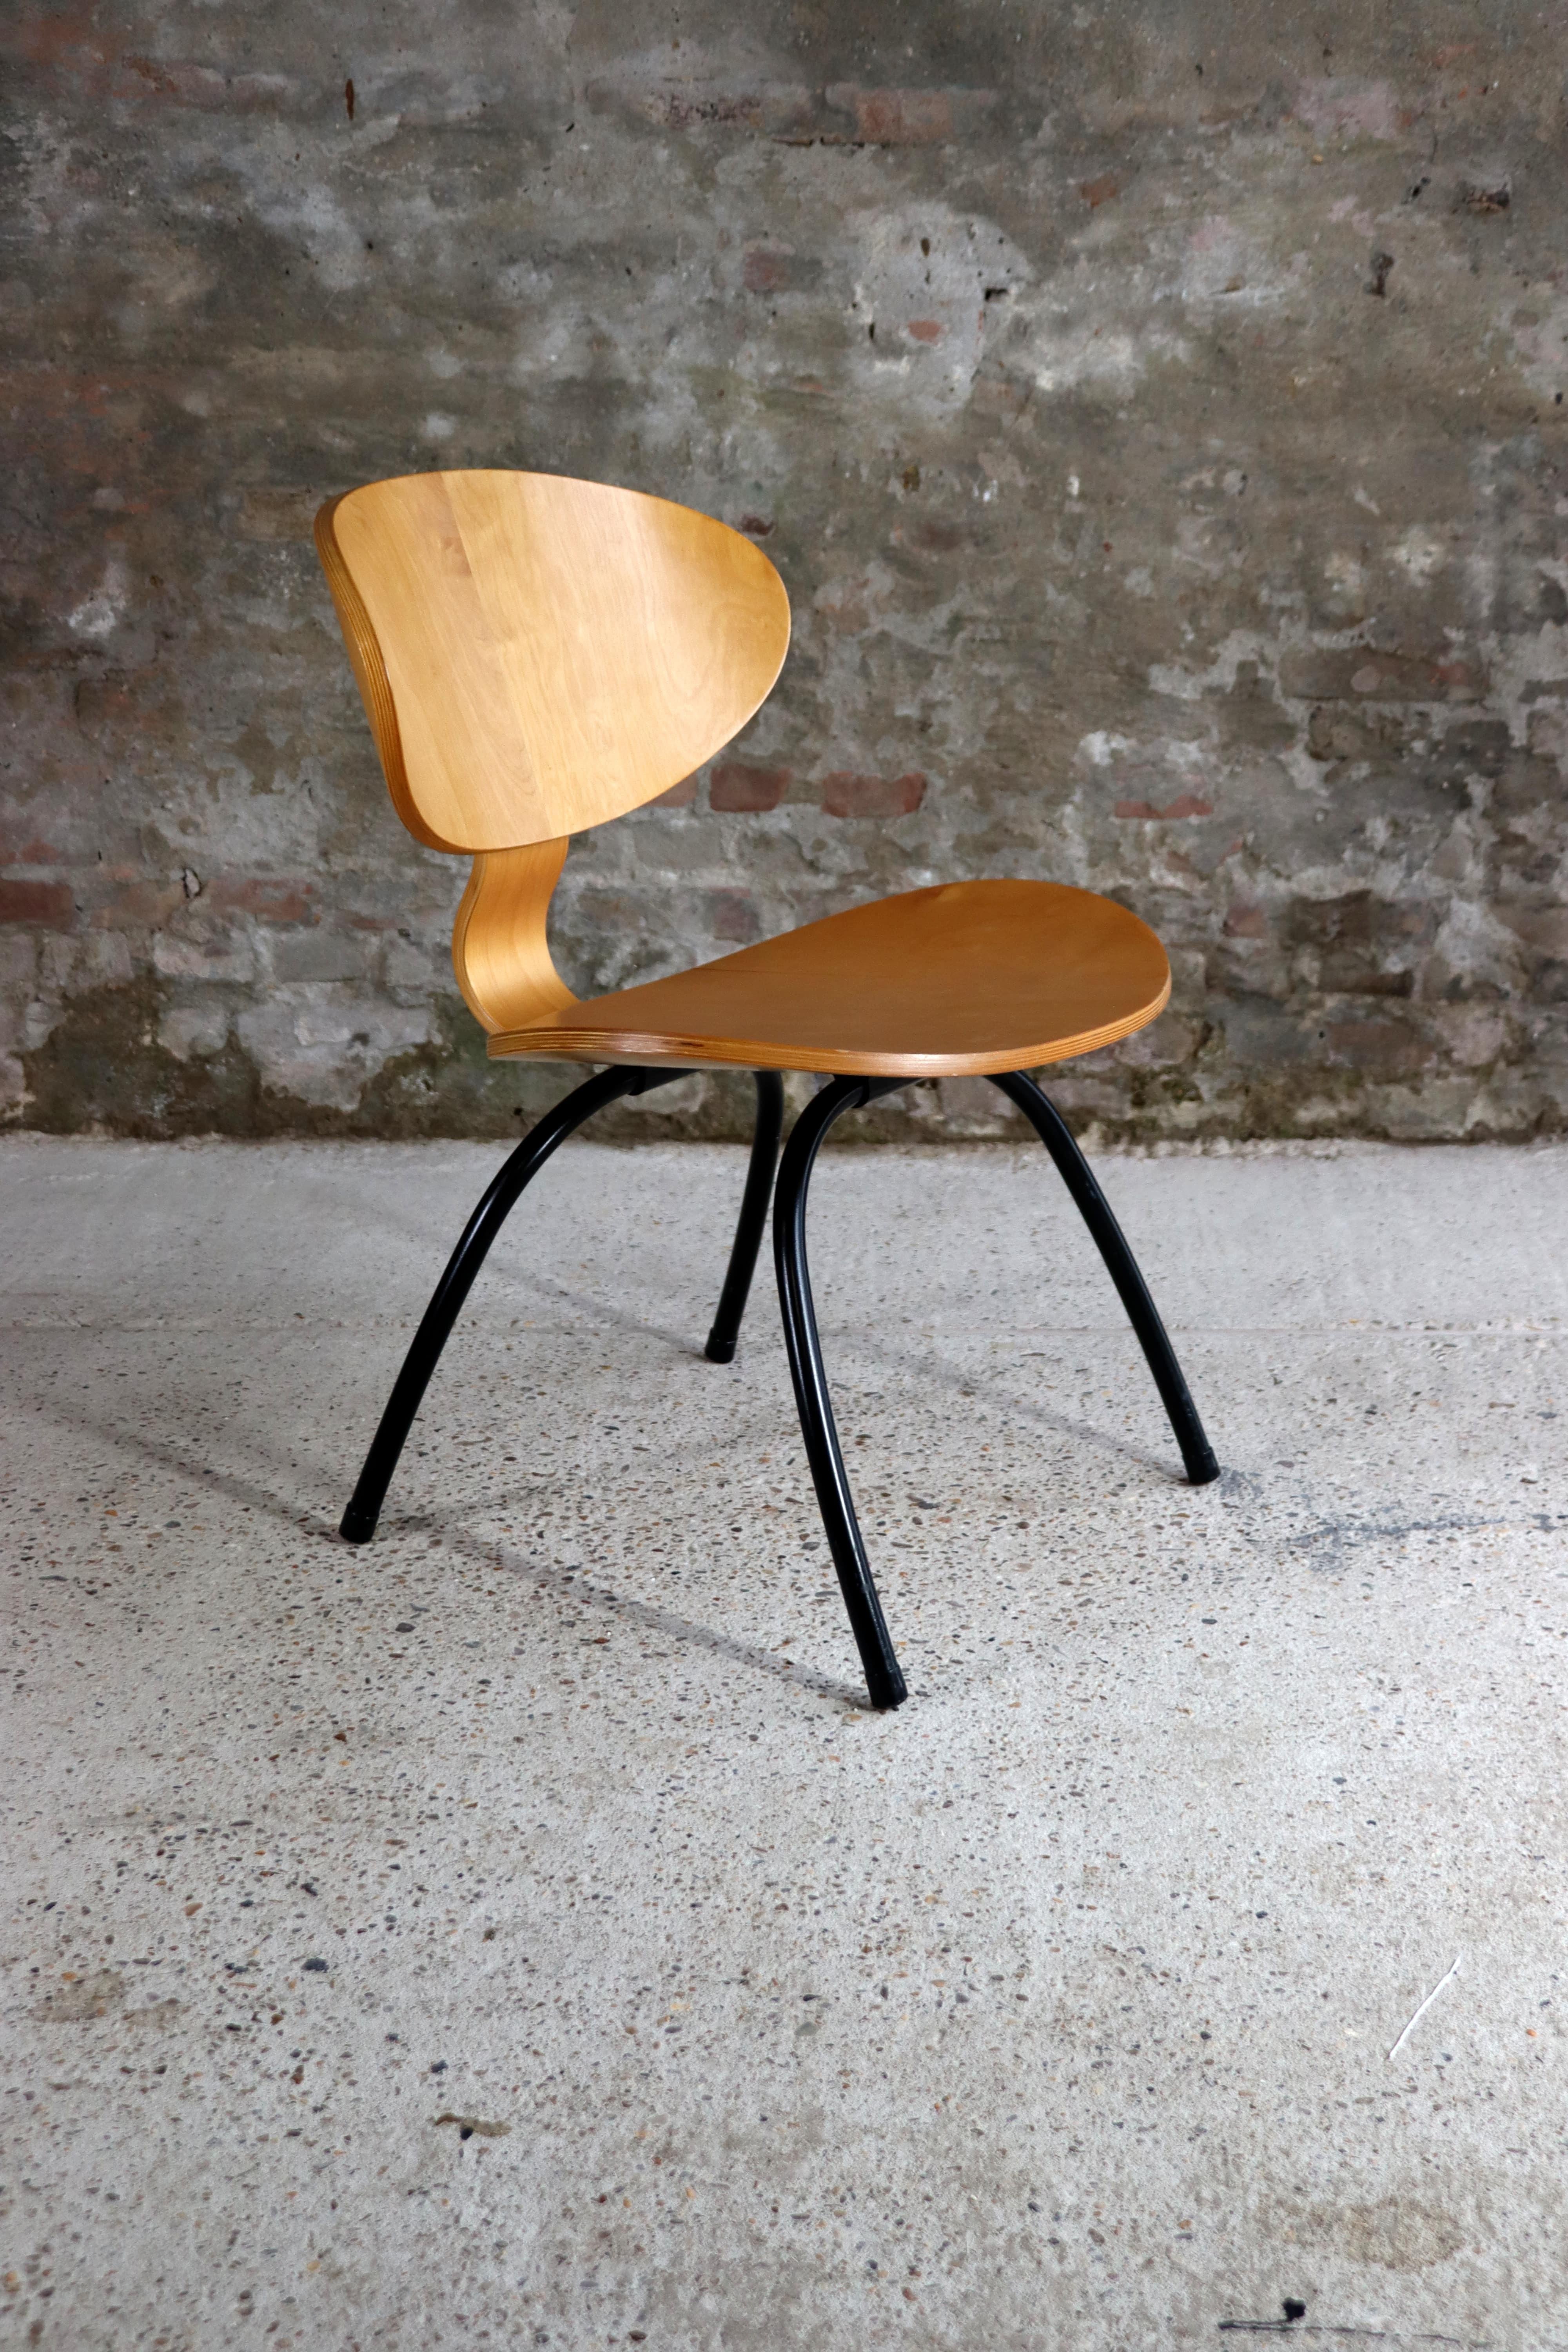 Vintage IKEA Sperrholz Sessel aus den 1990er Jahren. Das Design ist inspiriert von dem LCW-Stuhl von Charles & Ray Eames. Die Sitzfläche ist aus Sperrholz und das Gestell aus Metall gefertigt.

Zustand: Der Stuhl ist in einem sehr guten